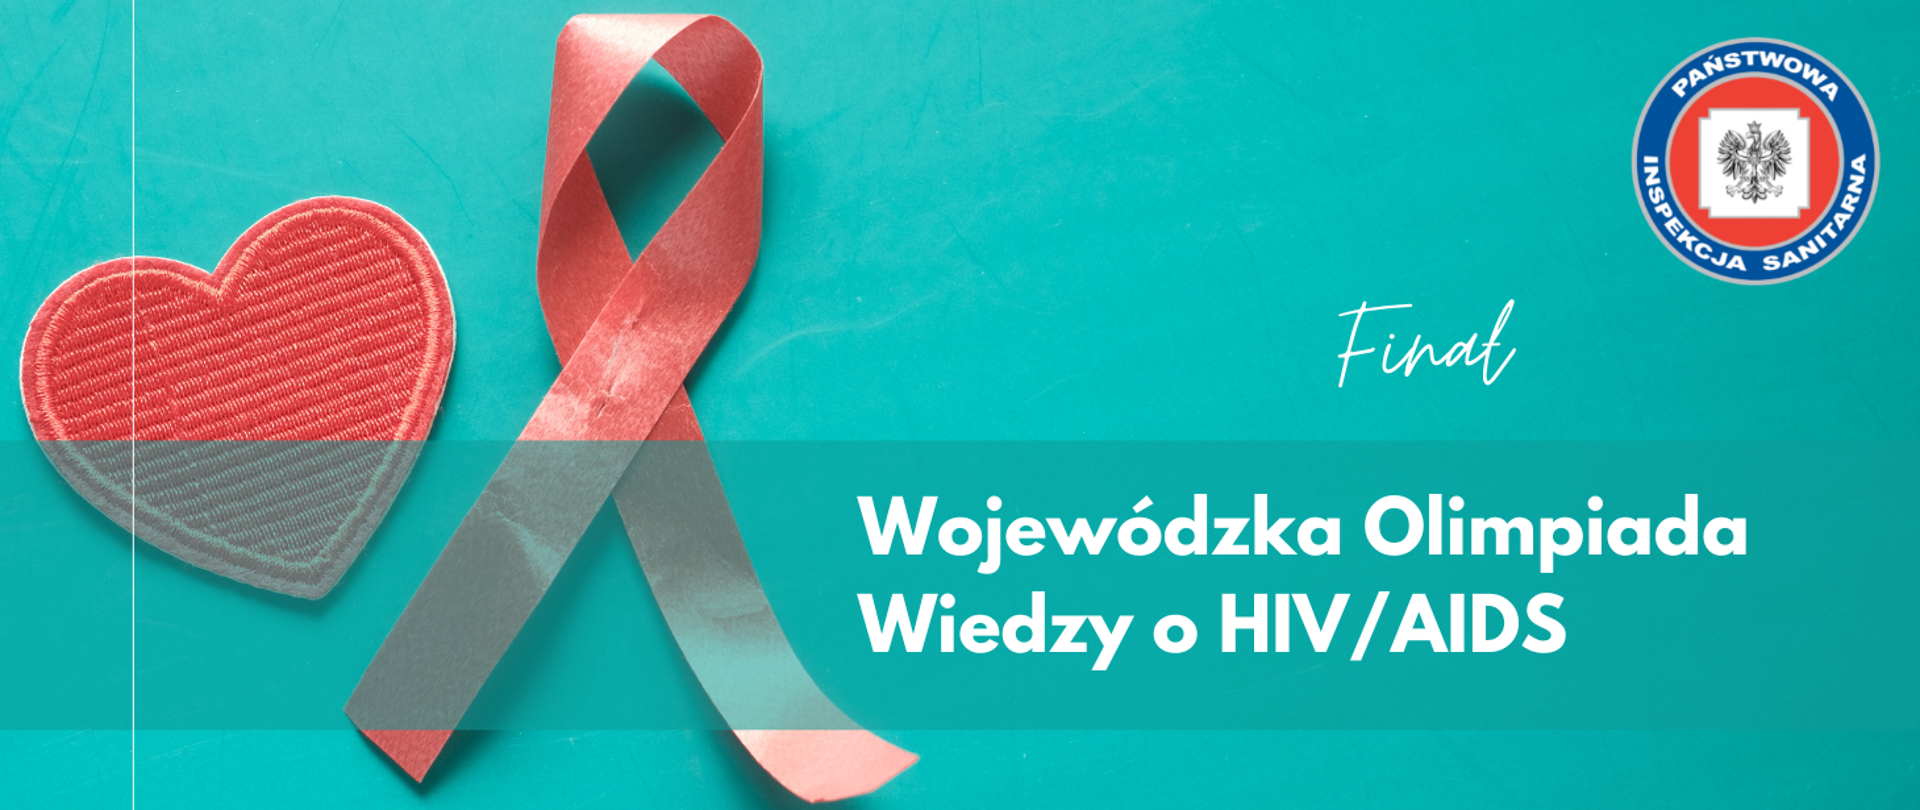 Grafika z tekstem: Wojewódzka Olimpiada Wiedzy o HIV/AIDS Finał. W tle zdjęcie czerwonej wstążki i serca. Logo PIS.